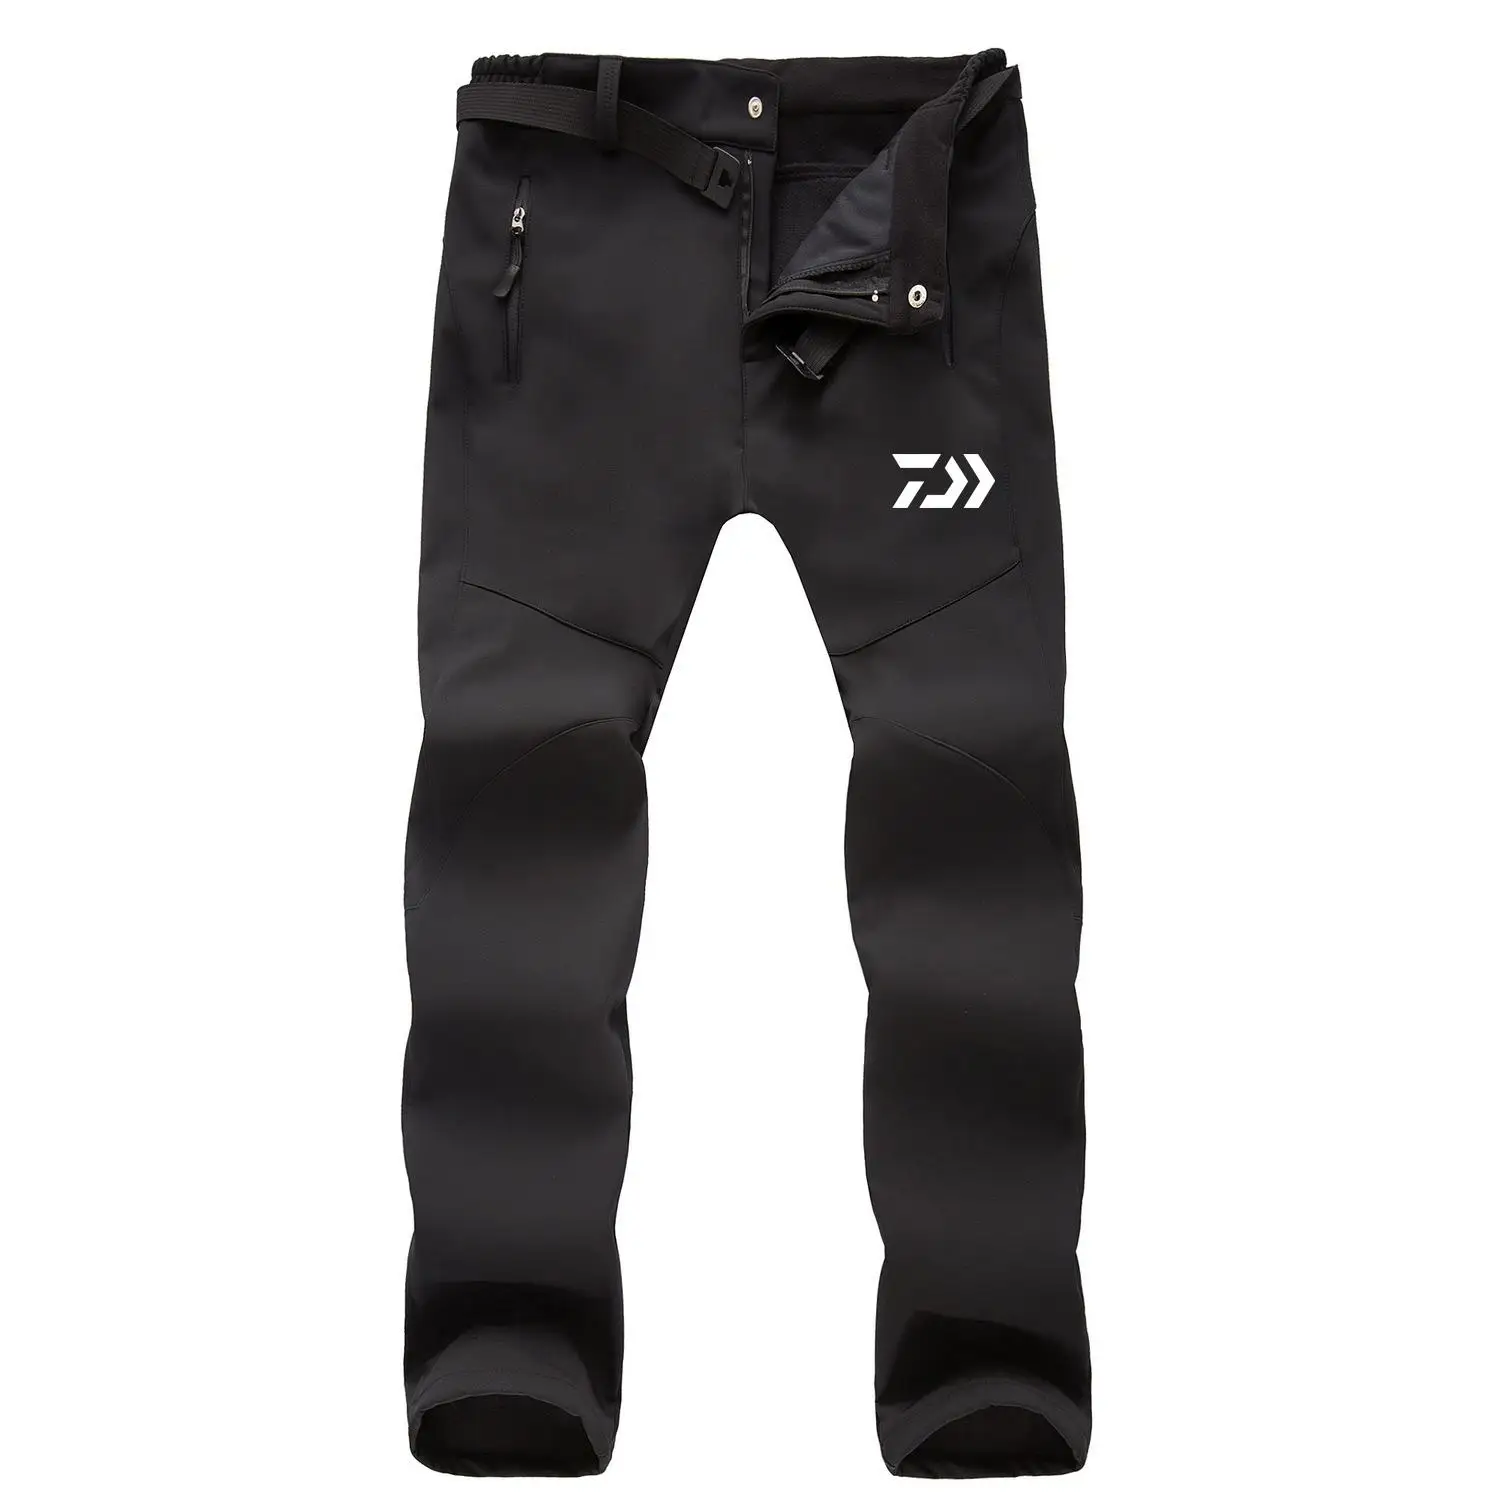 DAIWA рыболовные водонепроницаемые брюки мужские спортивные зимние толстые теплые флисовые рыбацкие брюки мужские ветровки спортивные брюки DAWA одежда - Цвет: Black